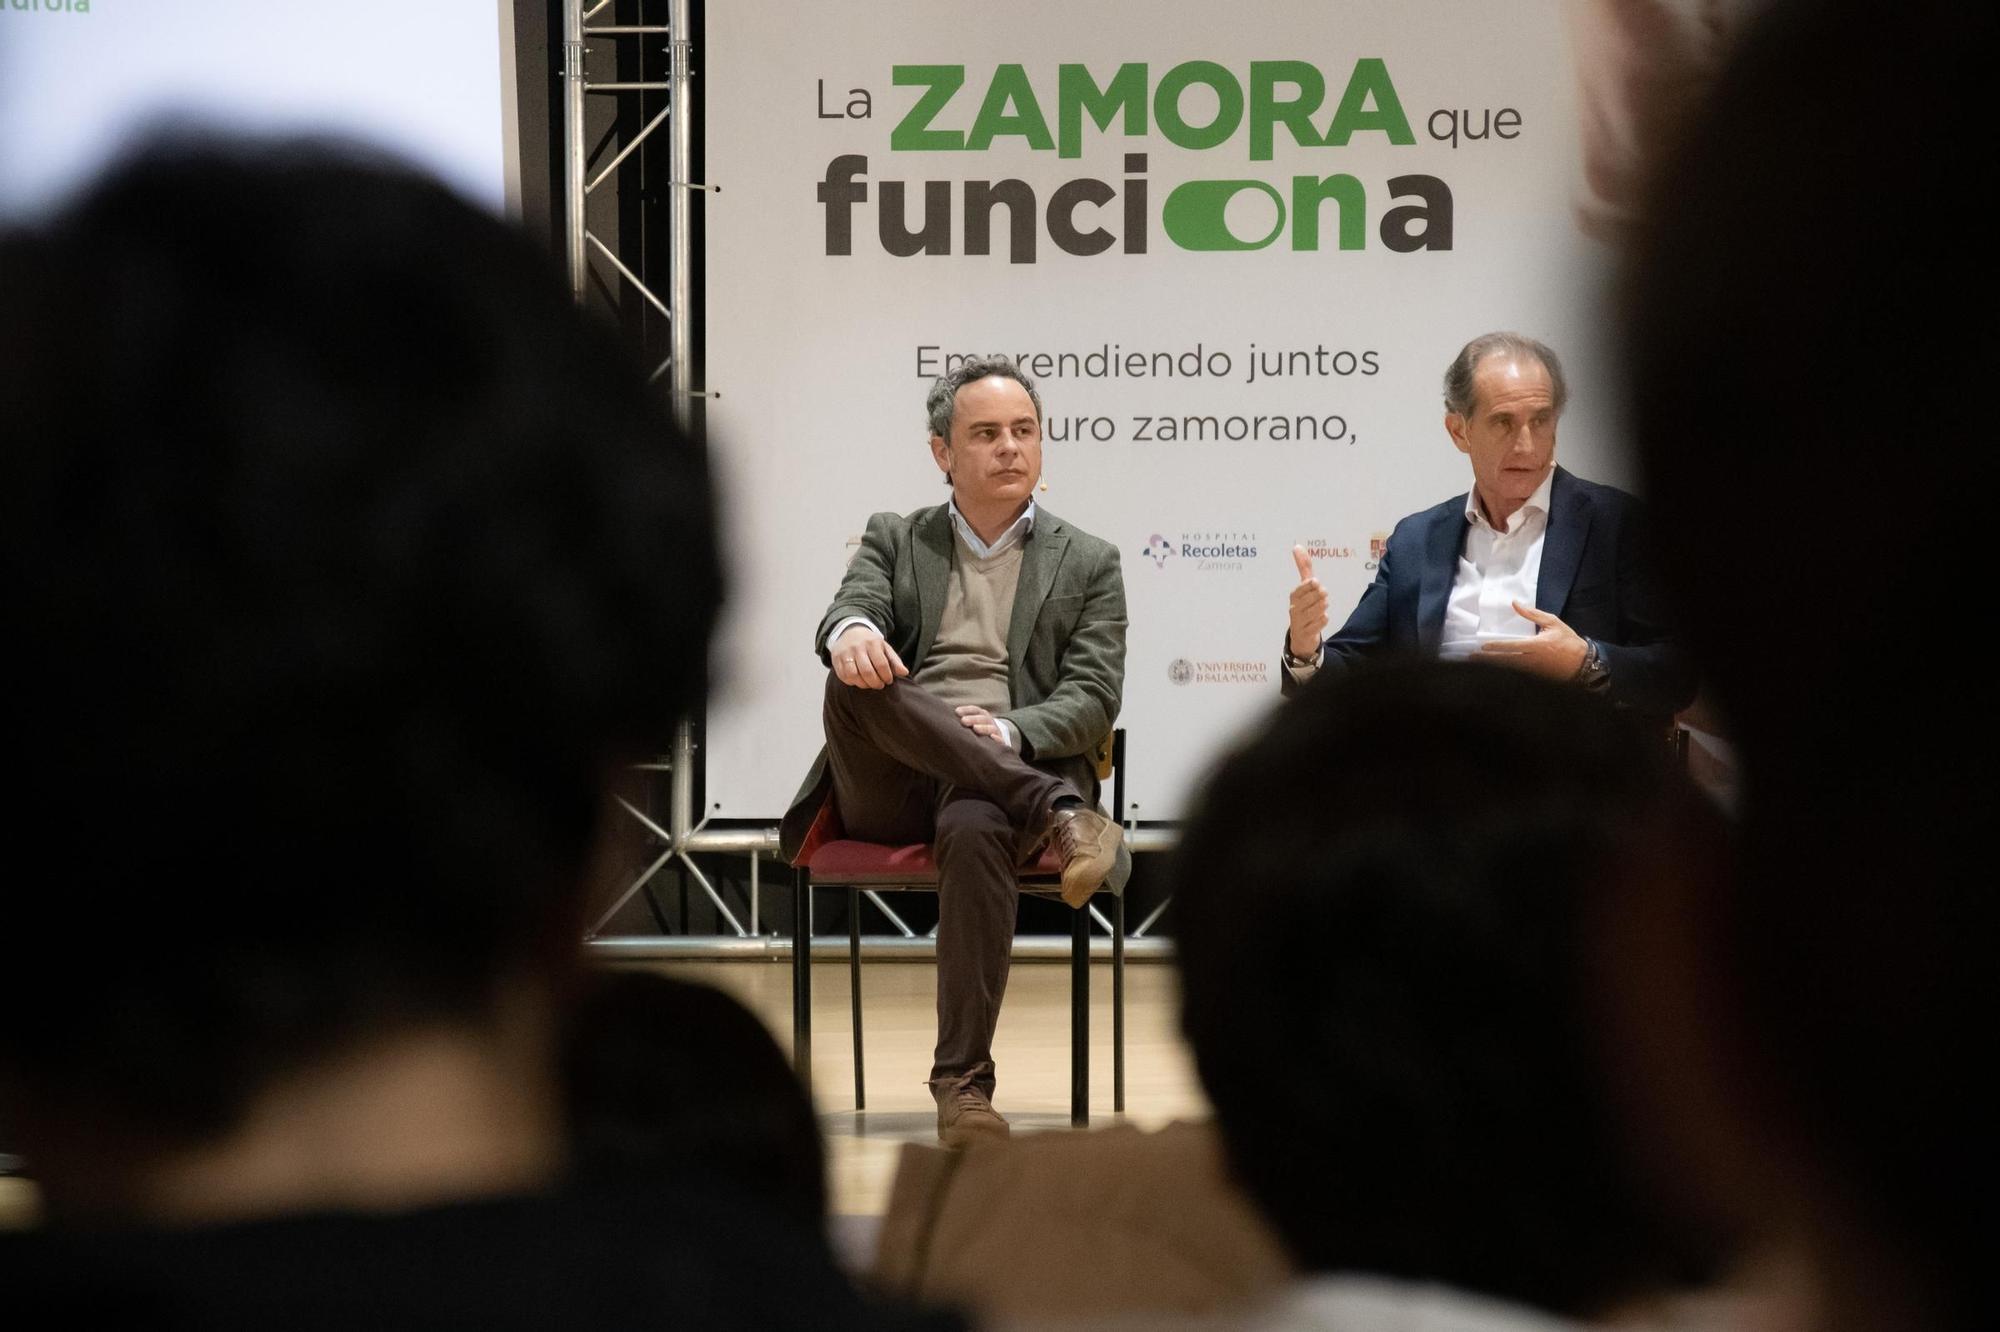 Evento "La Zamora que funciona" de LA OPINIÓN-EL CORREO DE ZAMORA